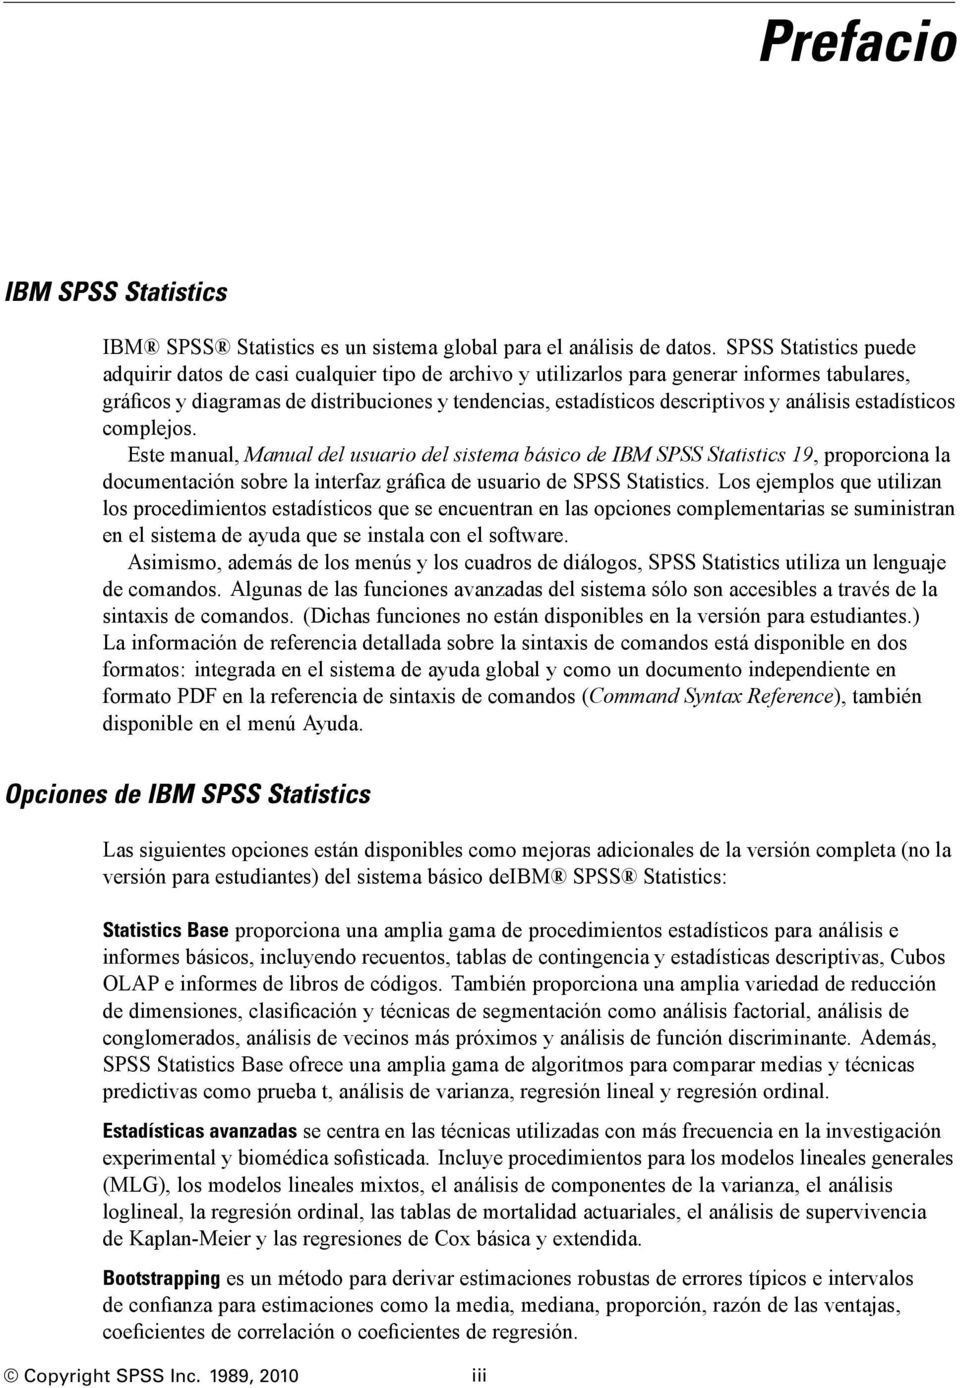 análisis estadísticos complejos. ste manual, Manual del usuario del sistema básico de IBM SPSS Statistics 19, proporciona la documentación sobre la interfaz gráfica de usuario de SPSS Statistics.